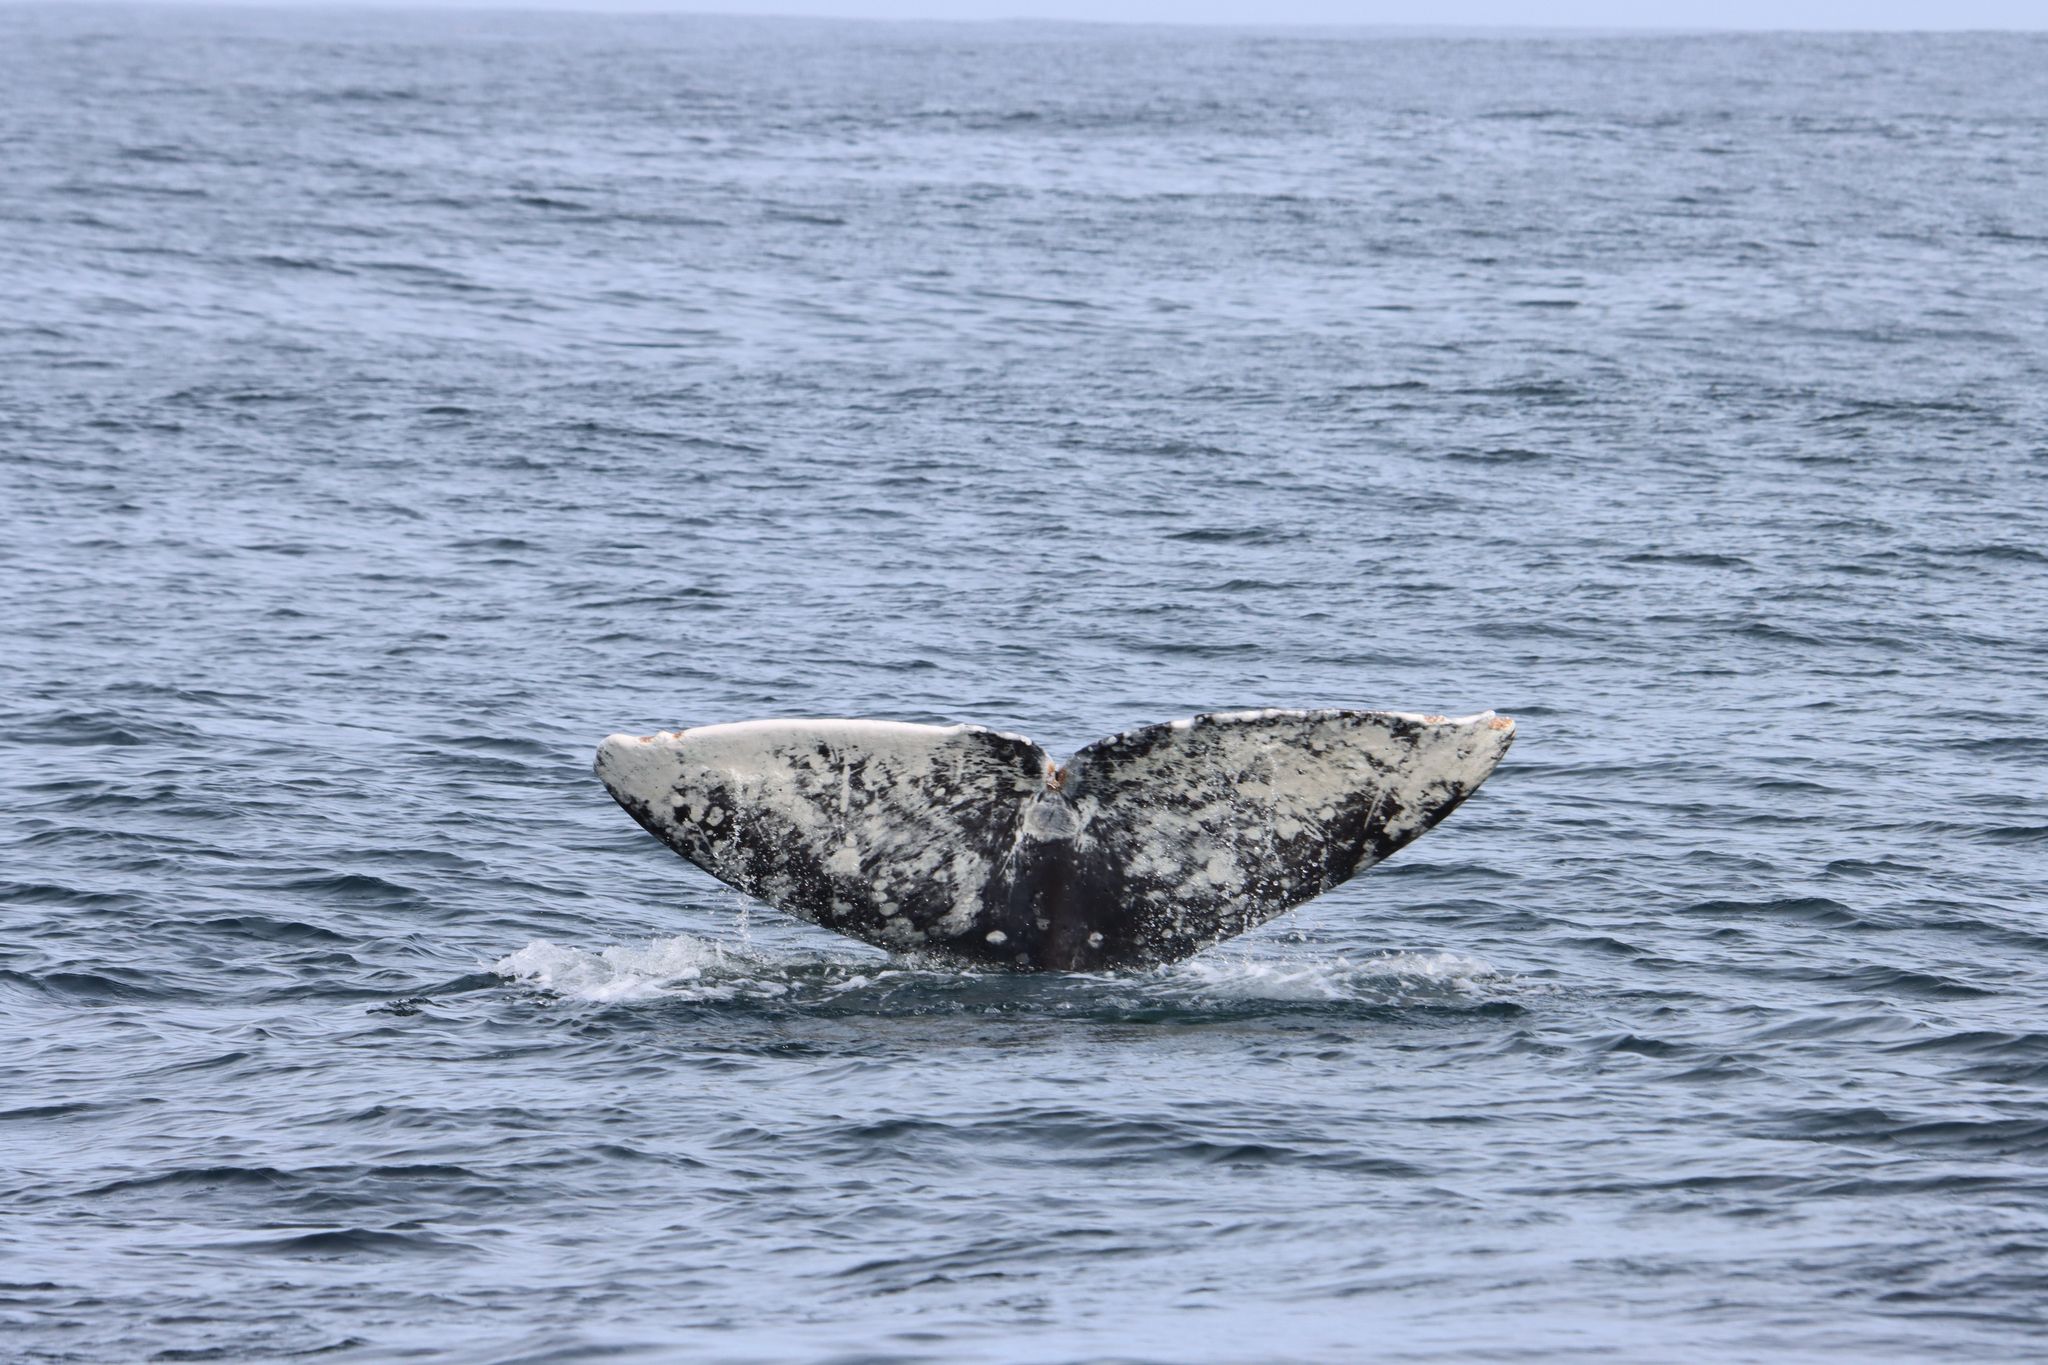 La ballena tenía seis trampas para mixinos, siete tipos de redes de pesca y hasta un protector de linterna en su estómago (Foto: Verena Wolff/dpa)